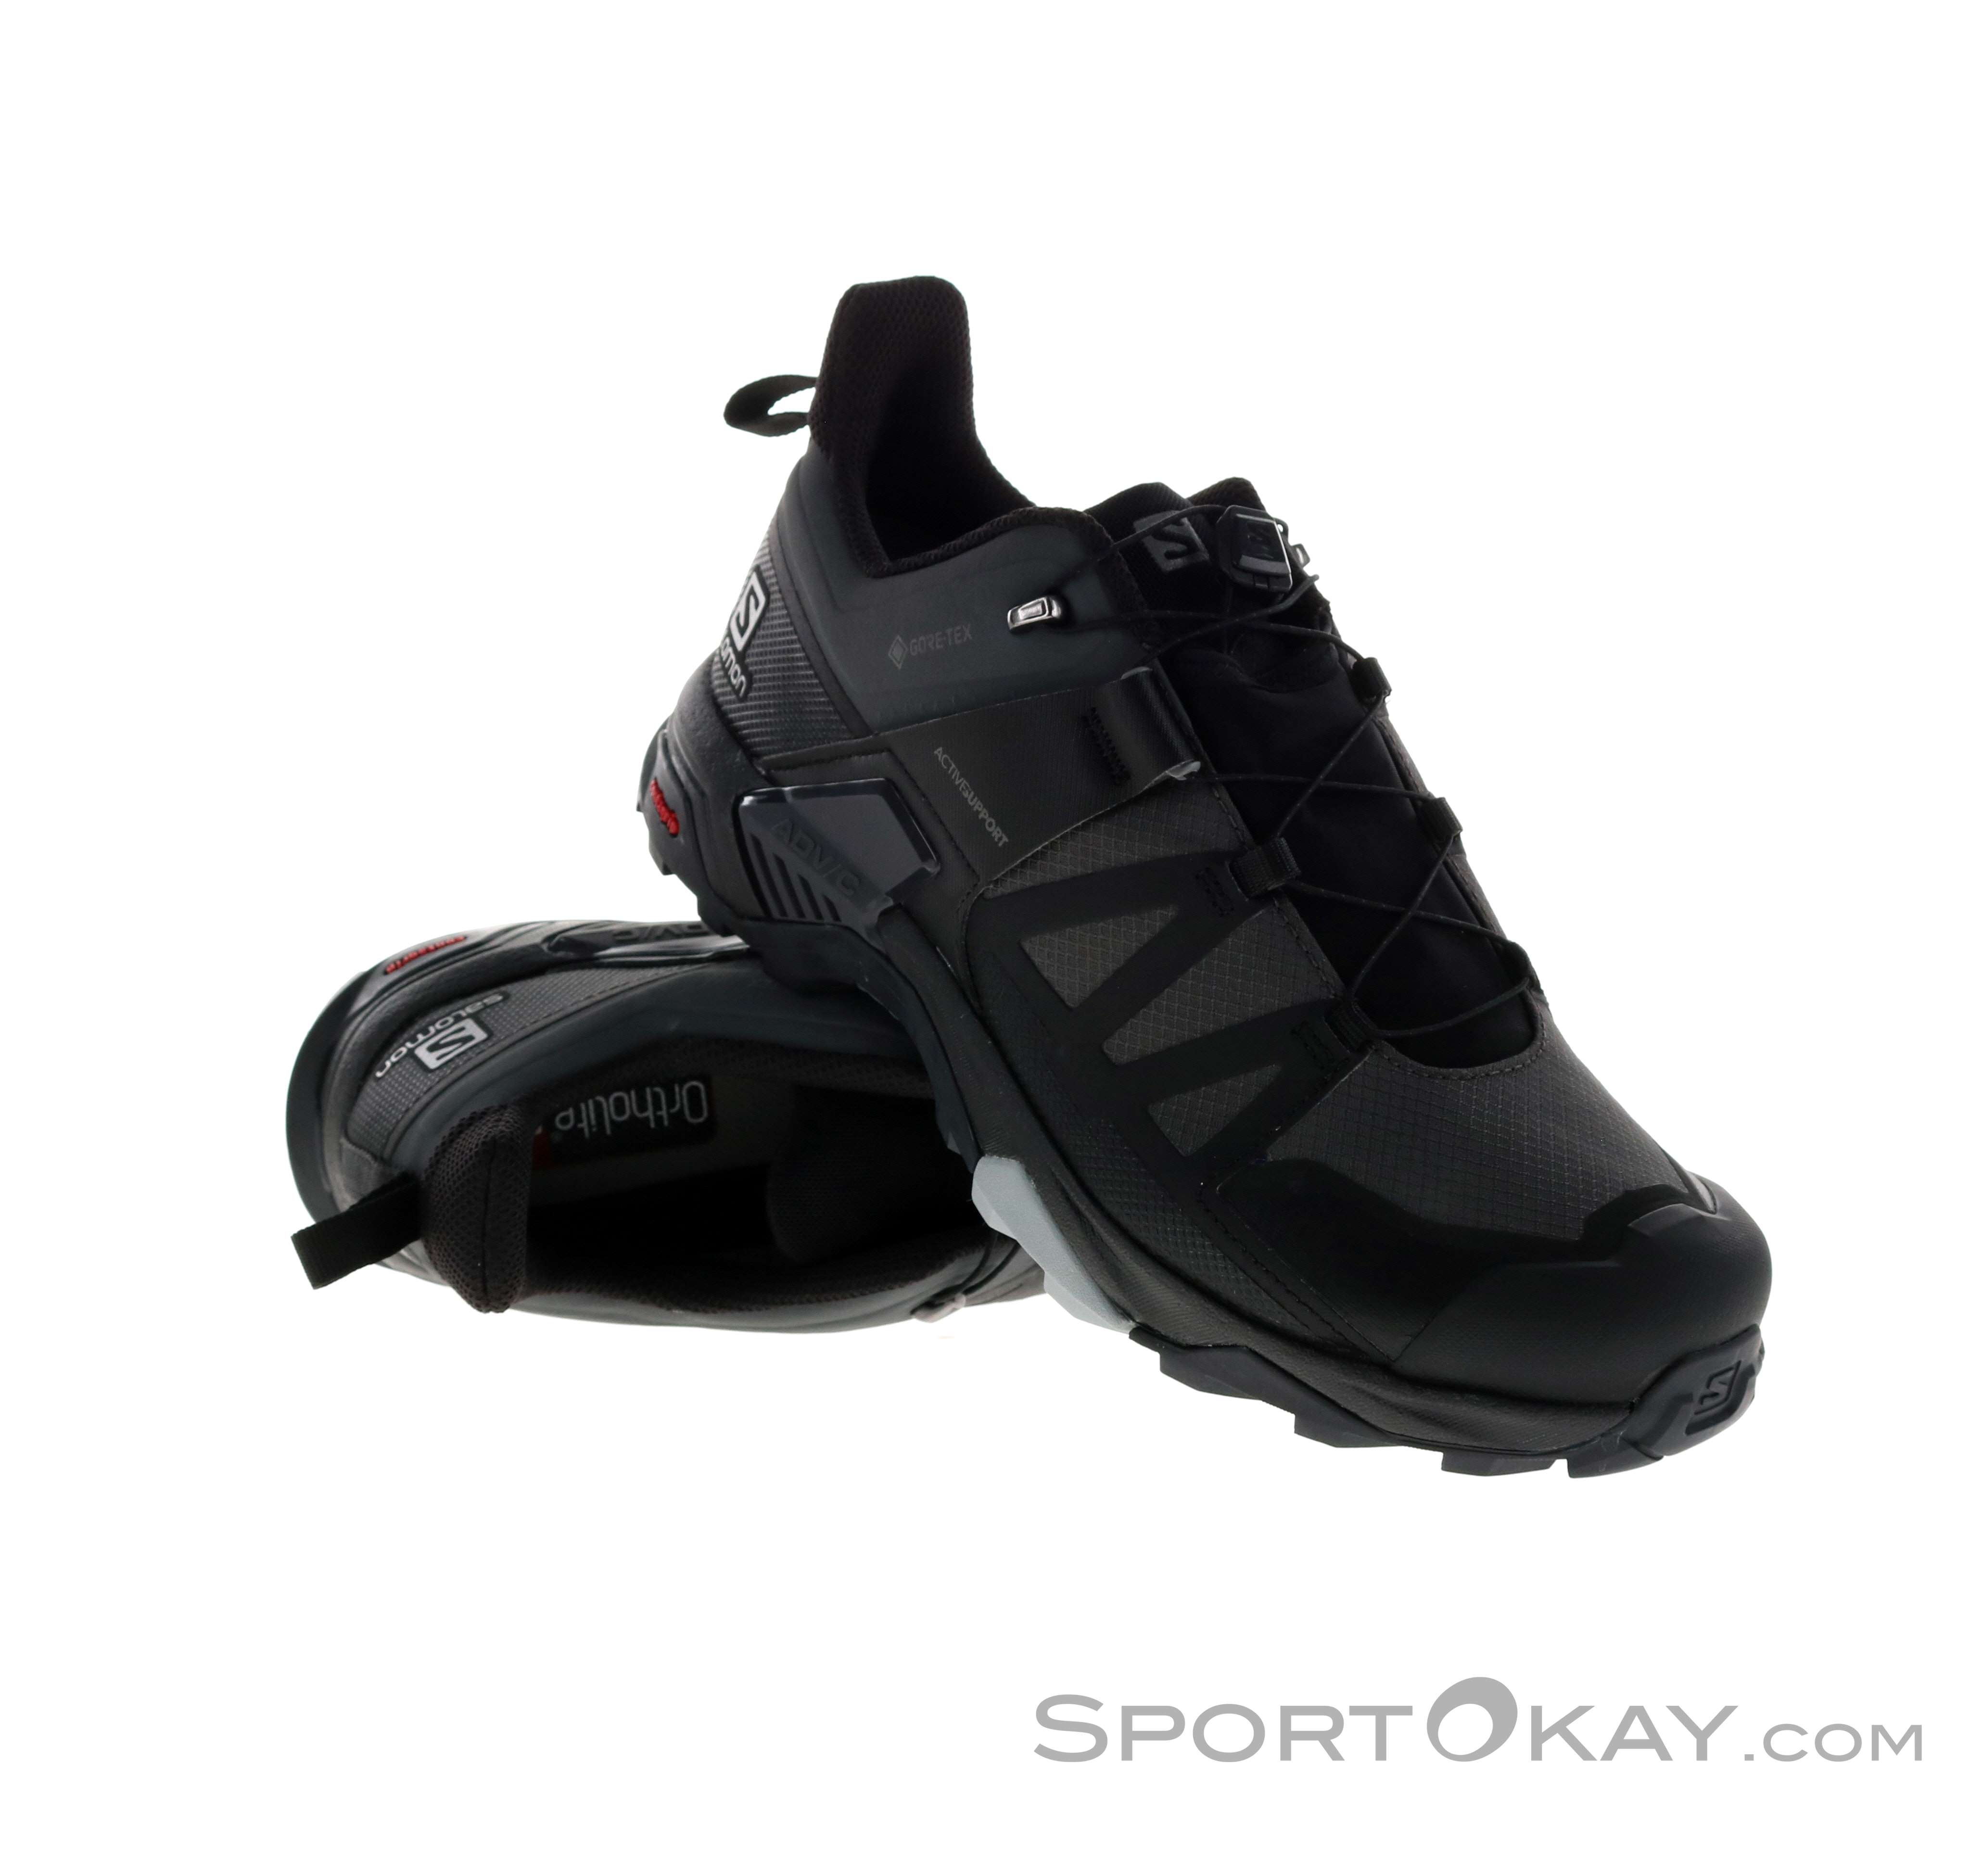 Salomon X Ultra 4 Mid GTX Caballeros Calzado para senderismo Gore-Tex -  Calzado para senderismo - Calzado y bastones - Aire libre - Todos